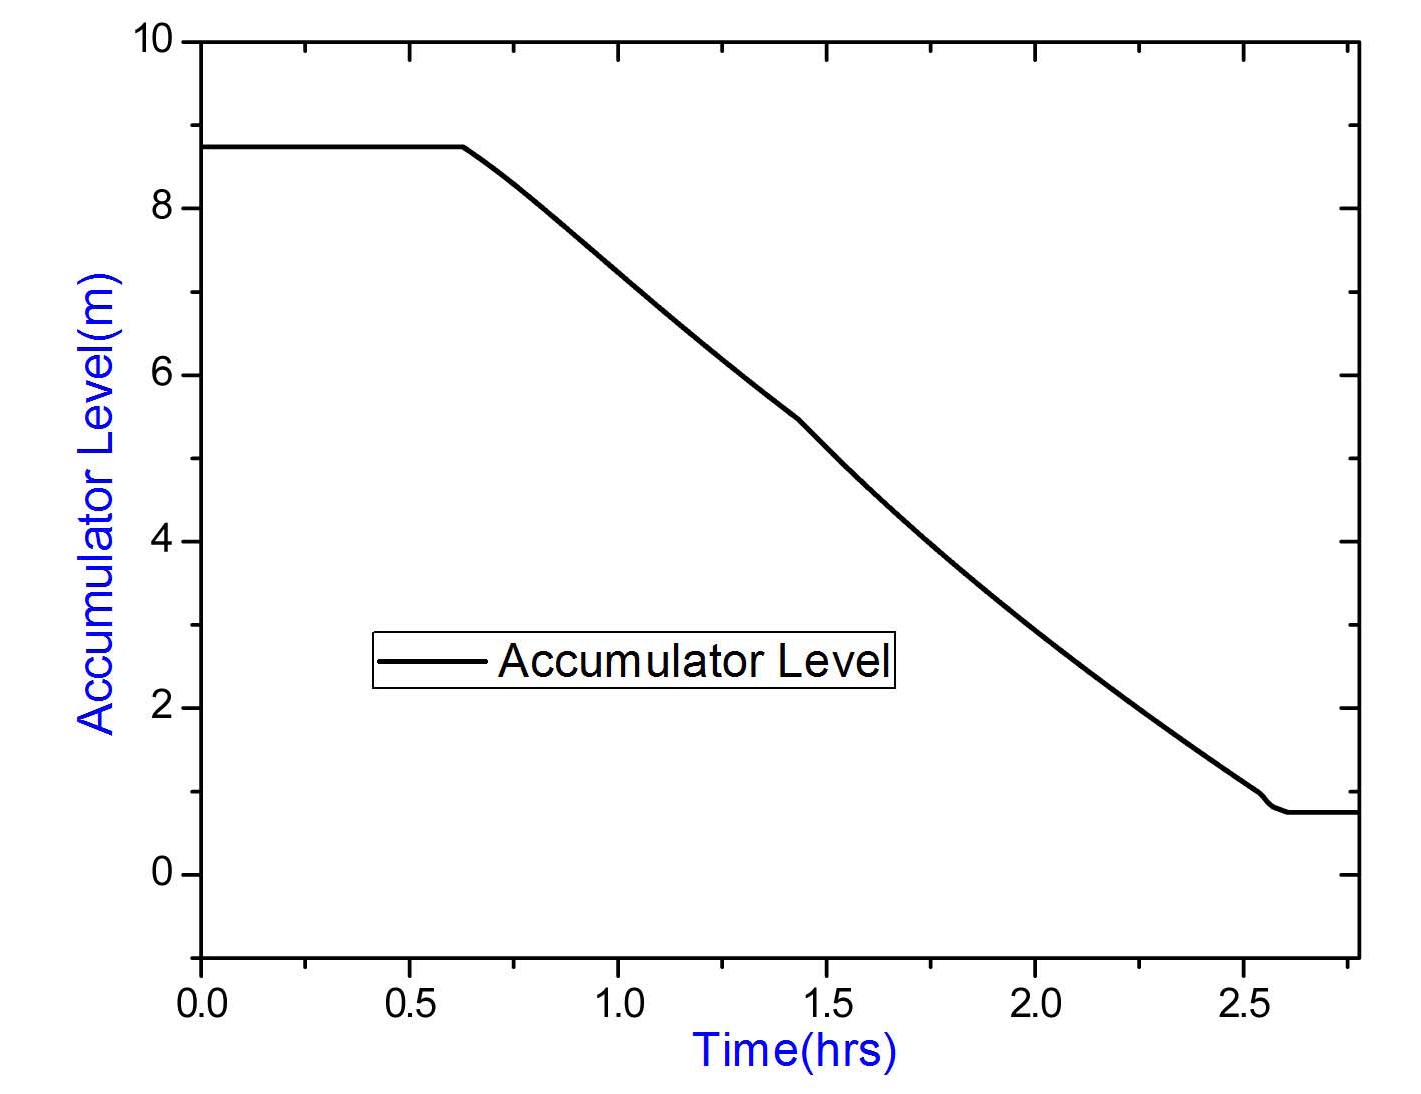 Variation of Accumulator Level